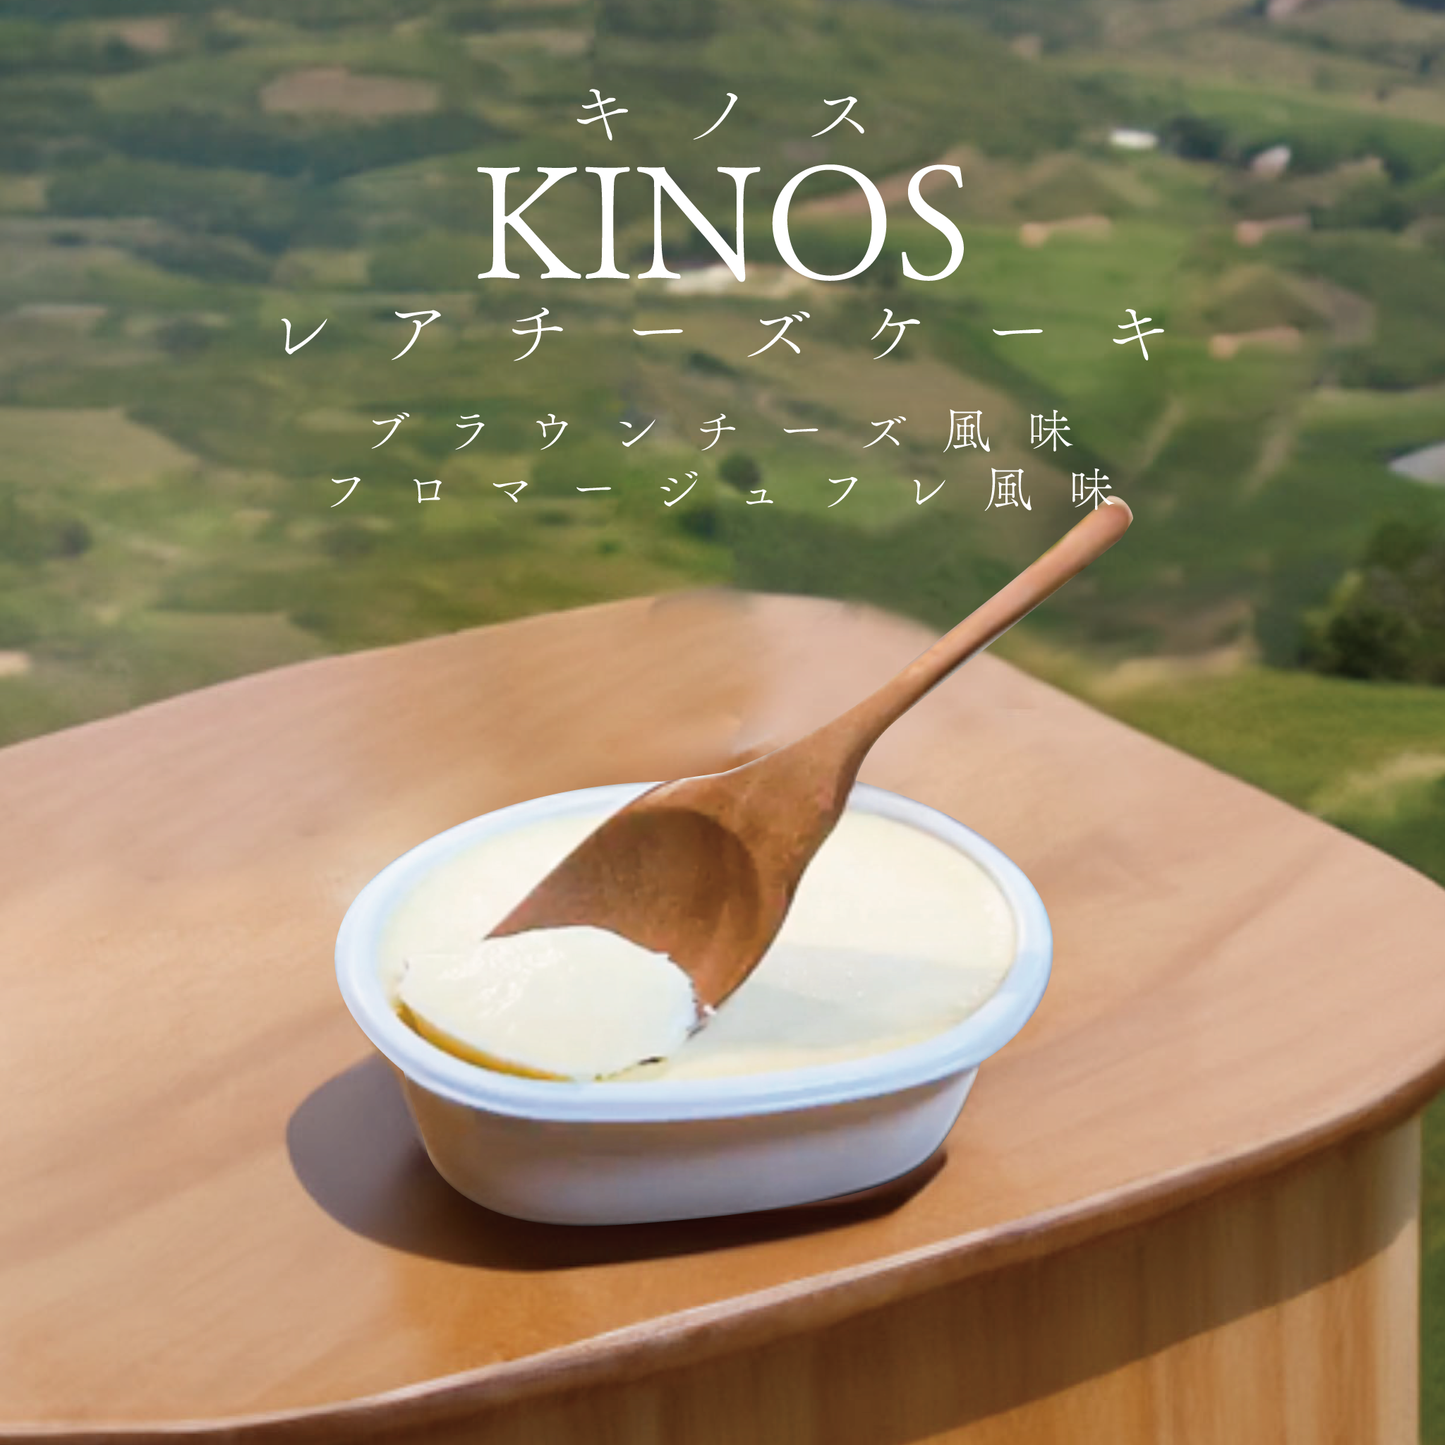 キノス-レアチーズケーキ- ブラウンチーズ/フロマージュフレ